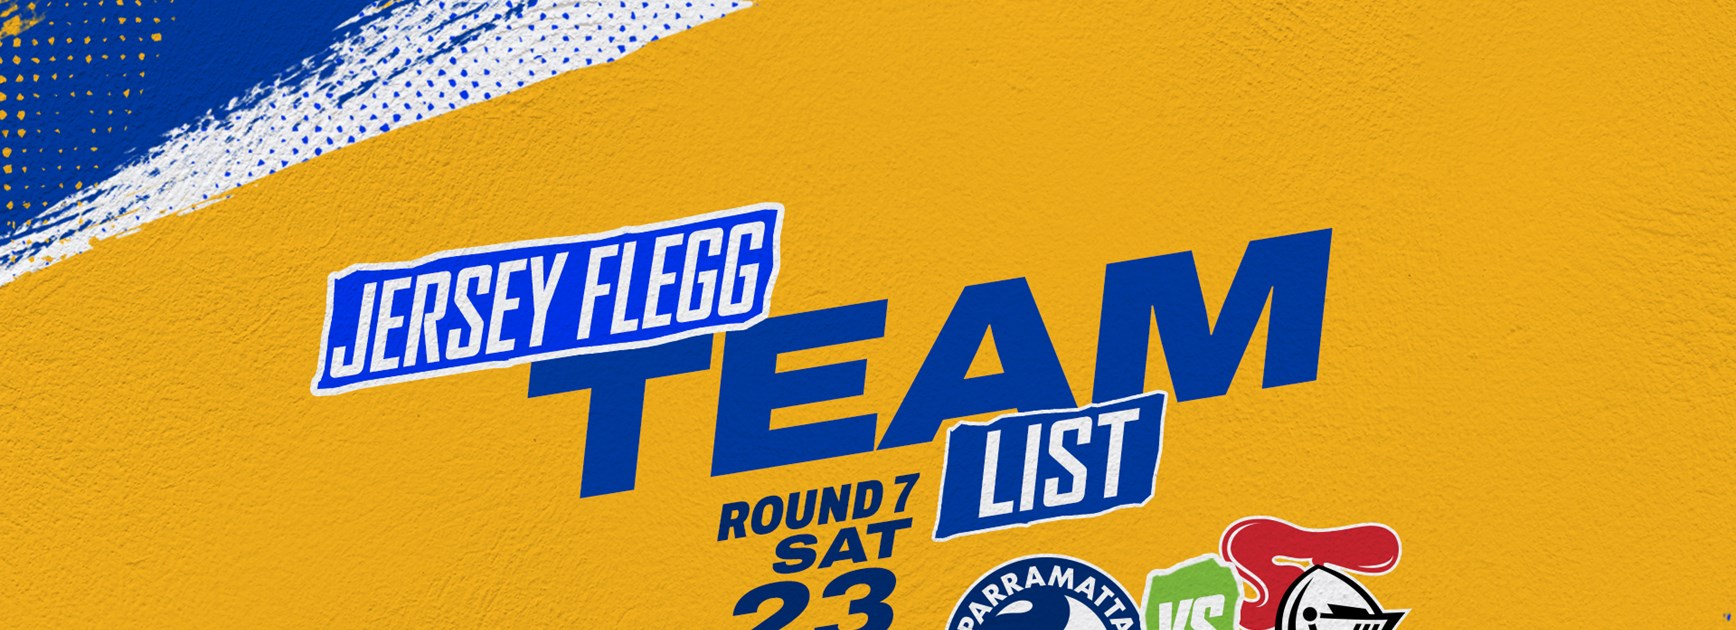 Jersey Flegg Cup Team List - Knights v Eels, Round Seven